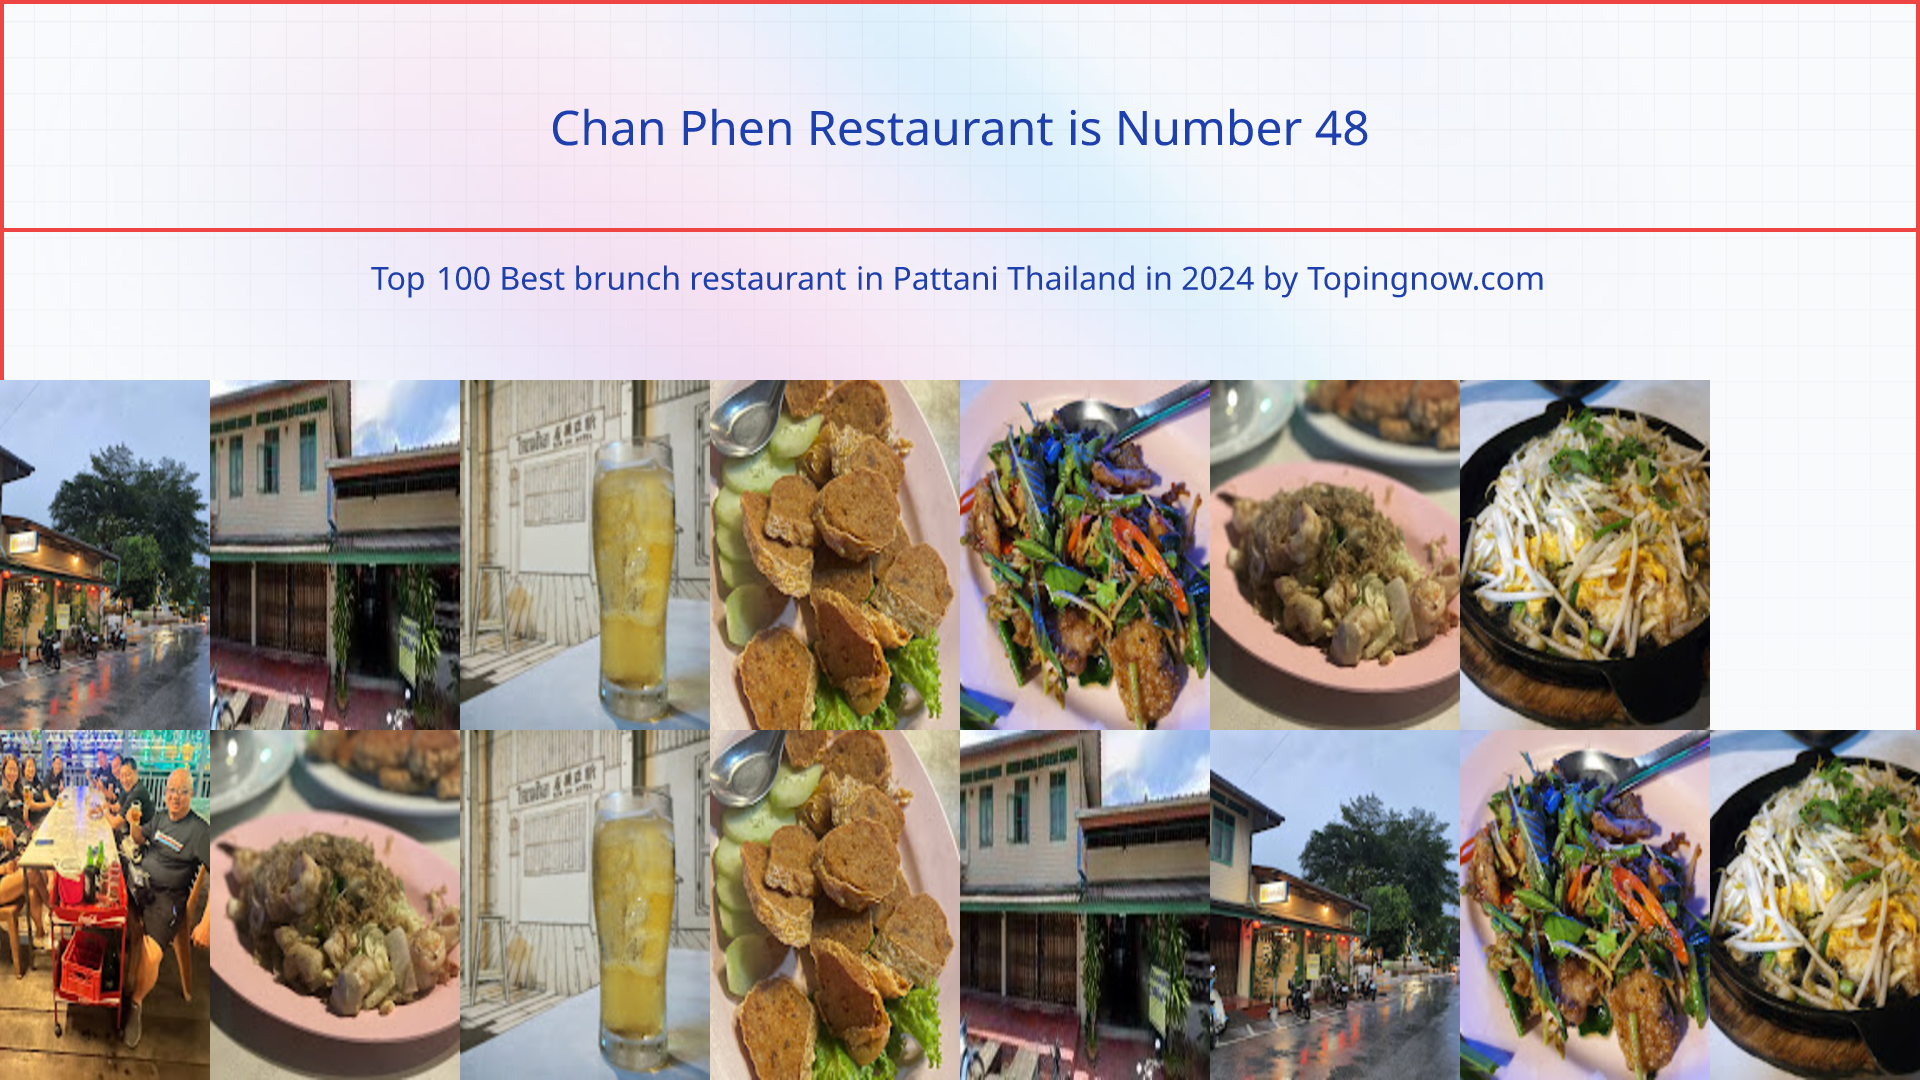 Chan Phen Restaurant: Top 100 Best brunch restaurant in Pattani Thailand in 2024